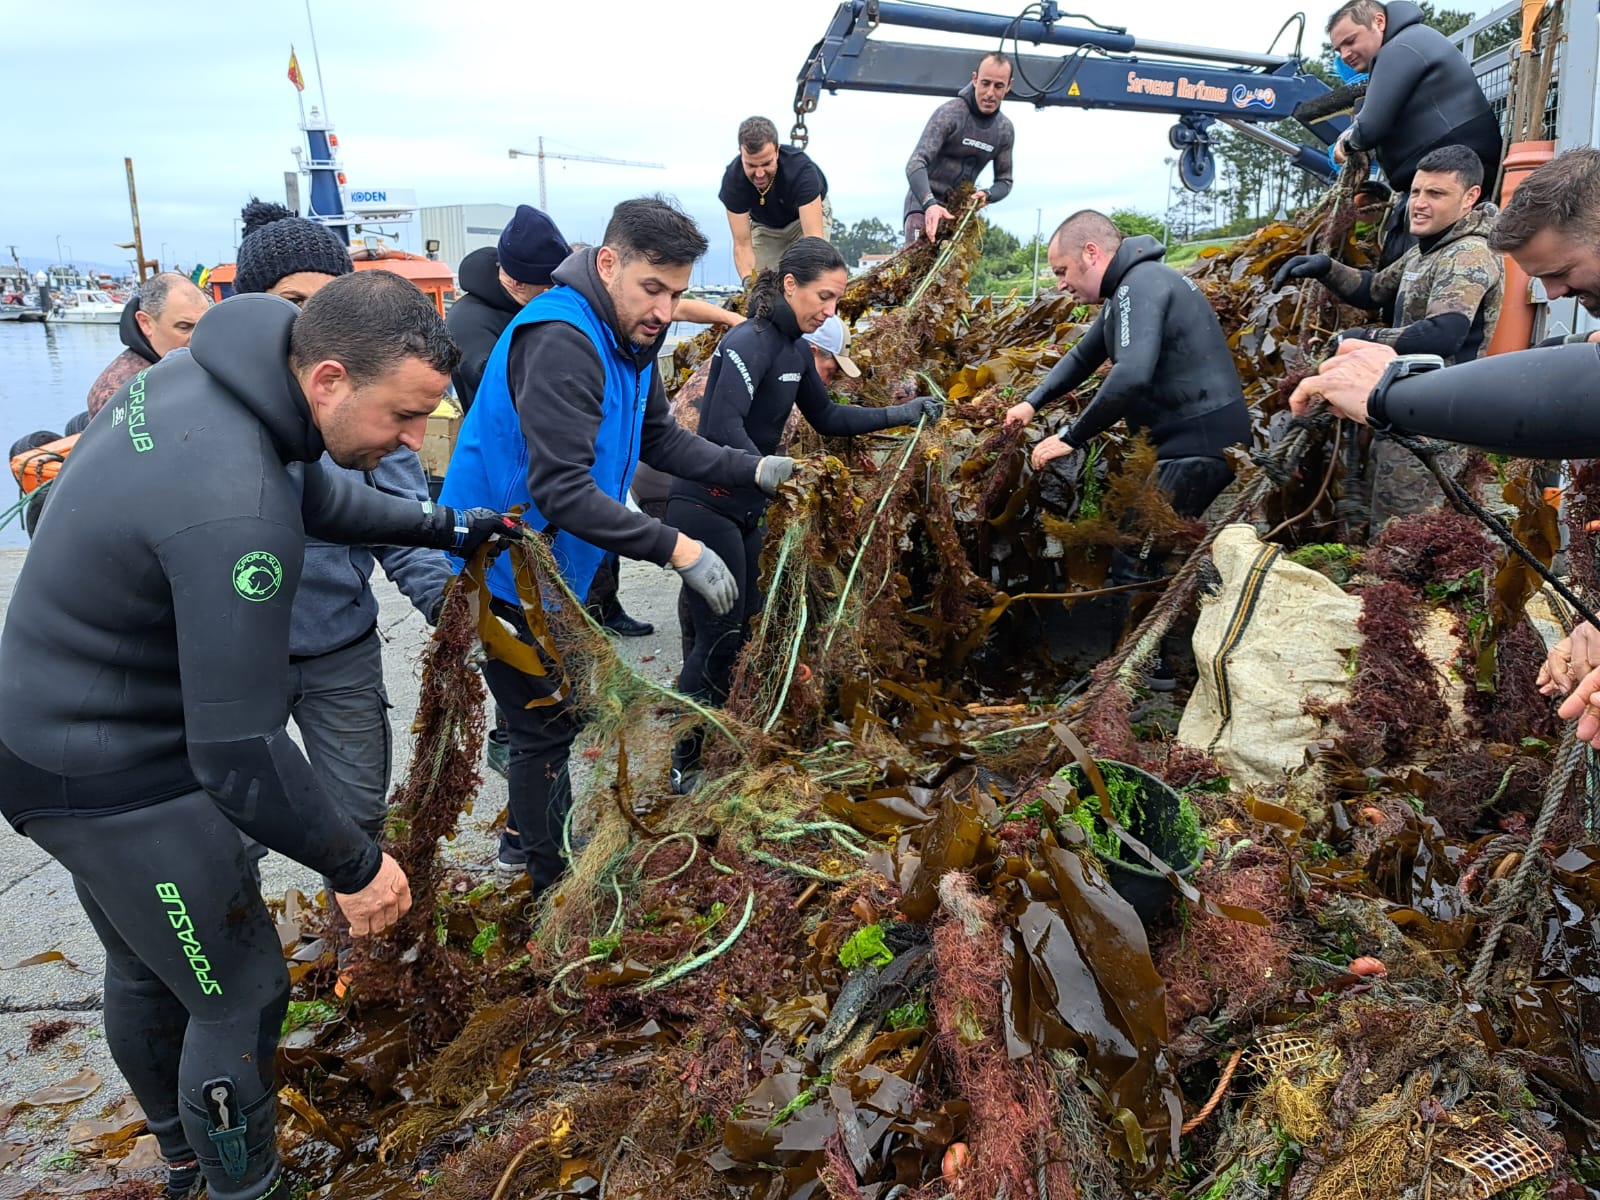 Mergulladores convocados por Afundación retiran máis de 2 toneladas de residuos dos fondos do Areoso